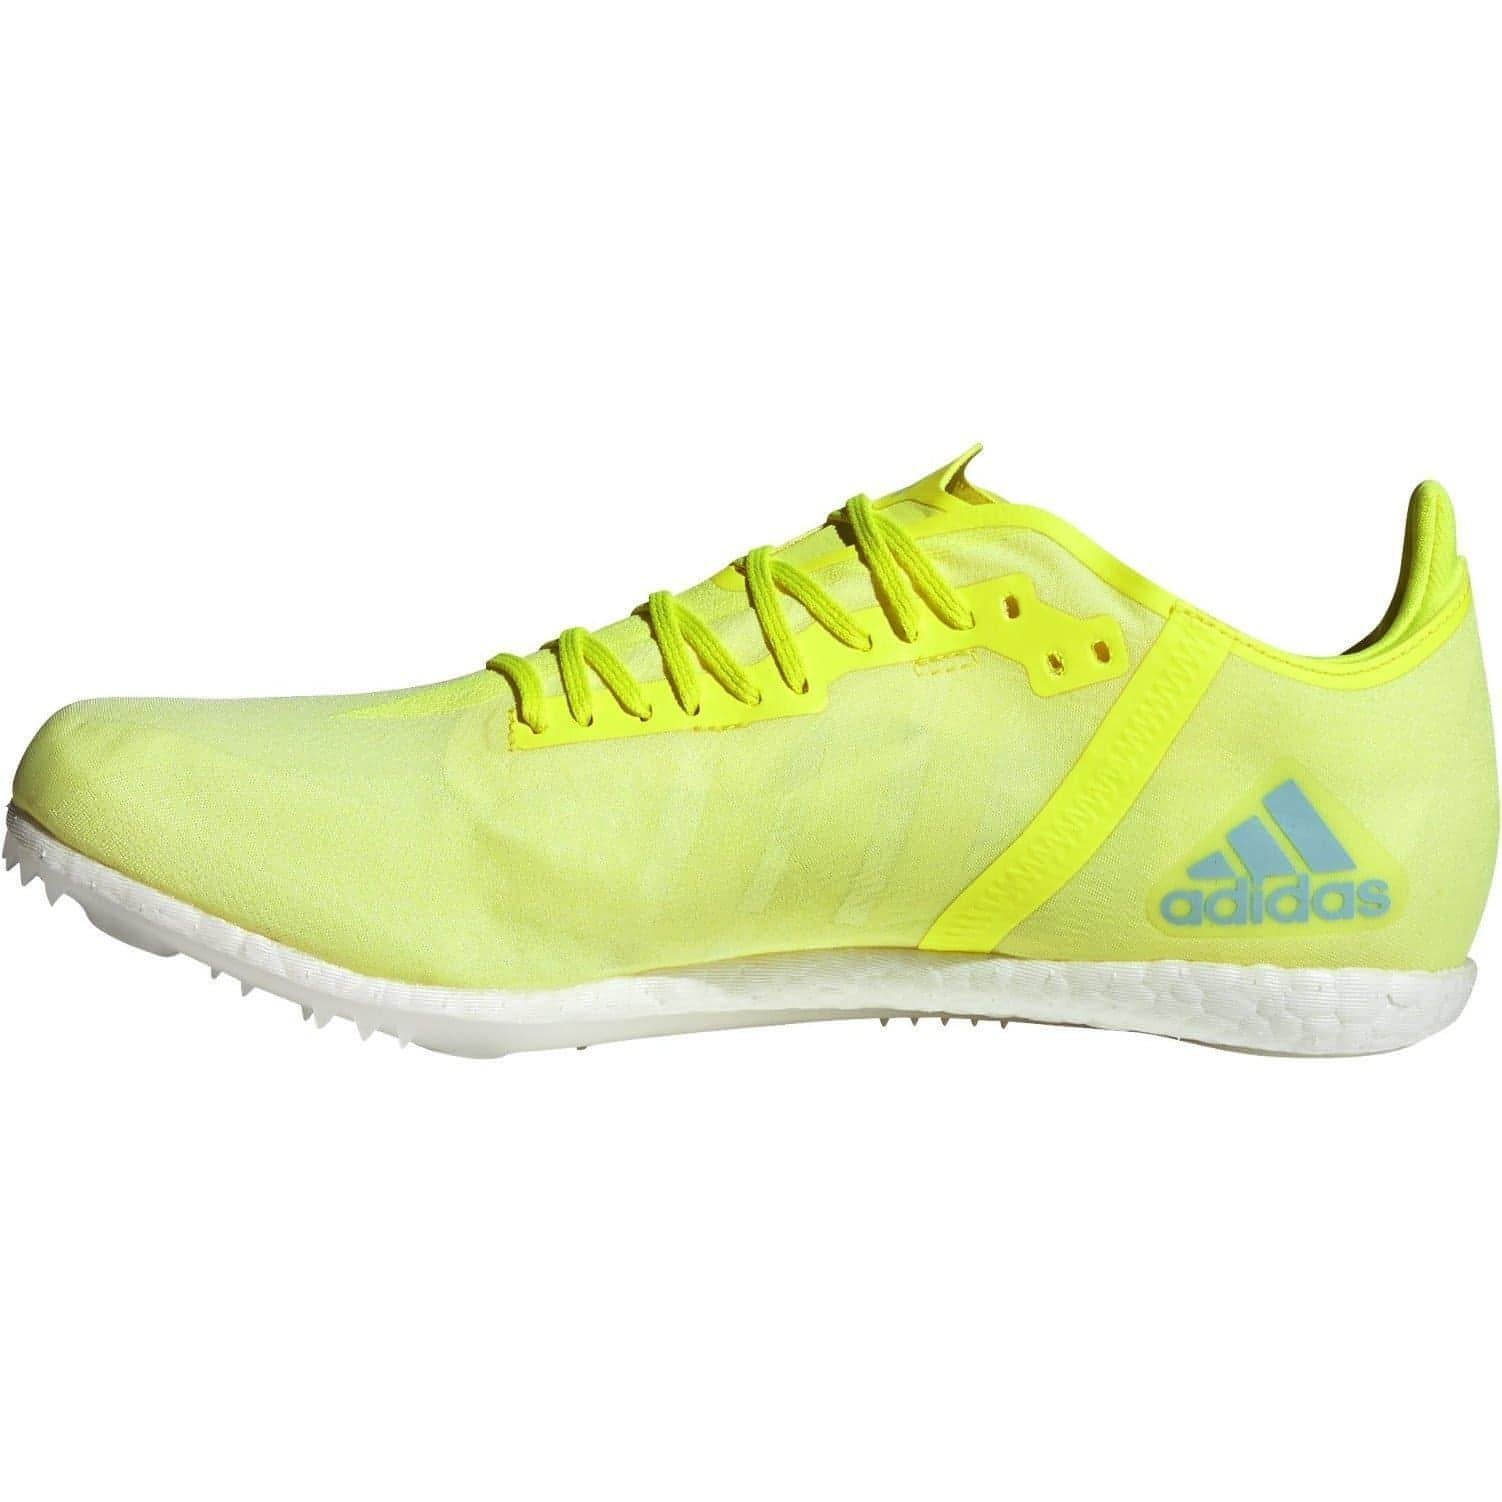 adidas Adizero Boost Running Spikes - Yellow